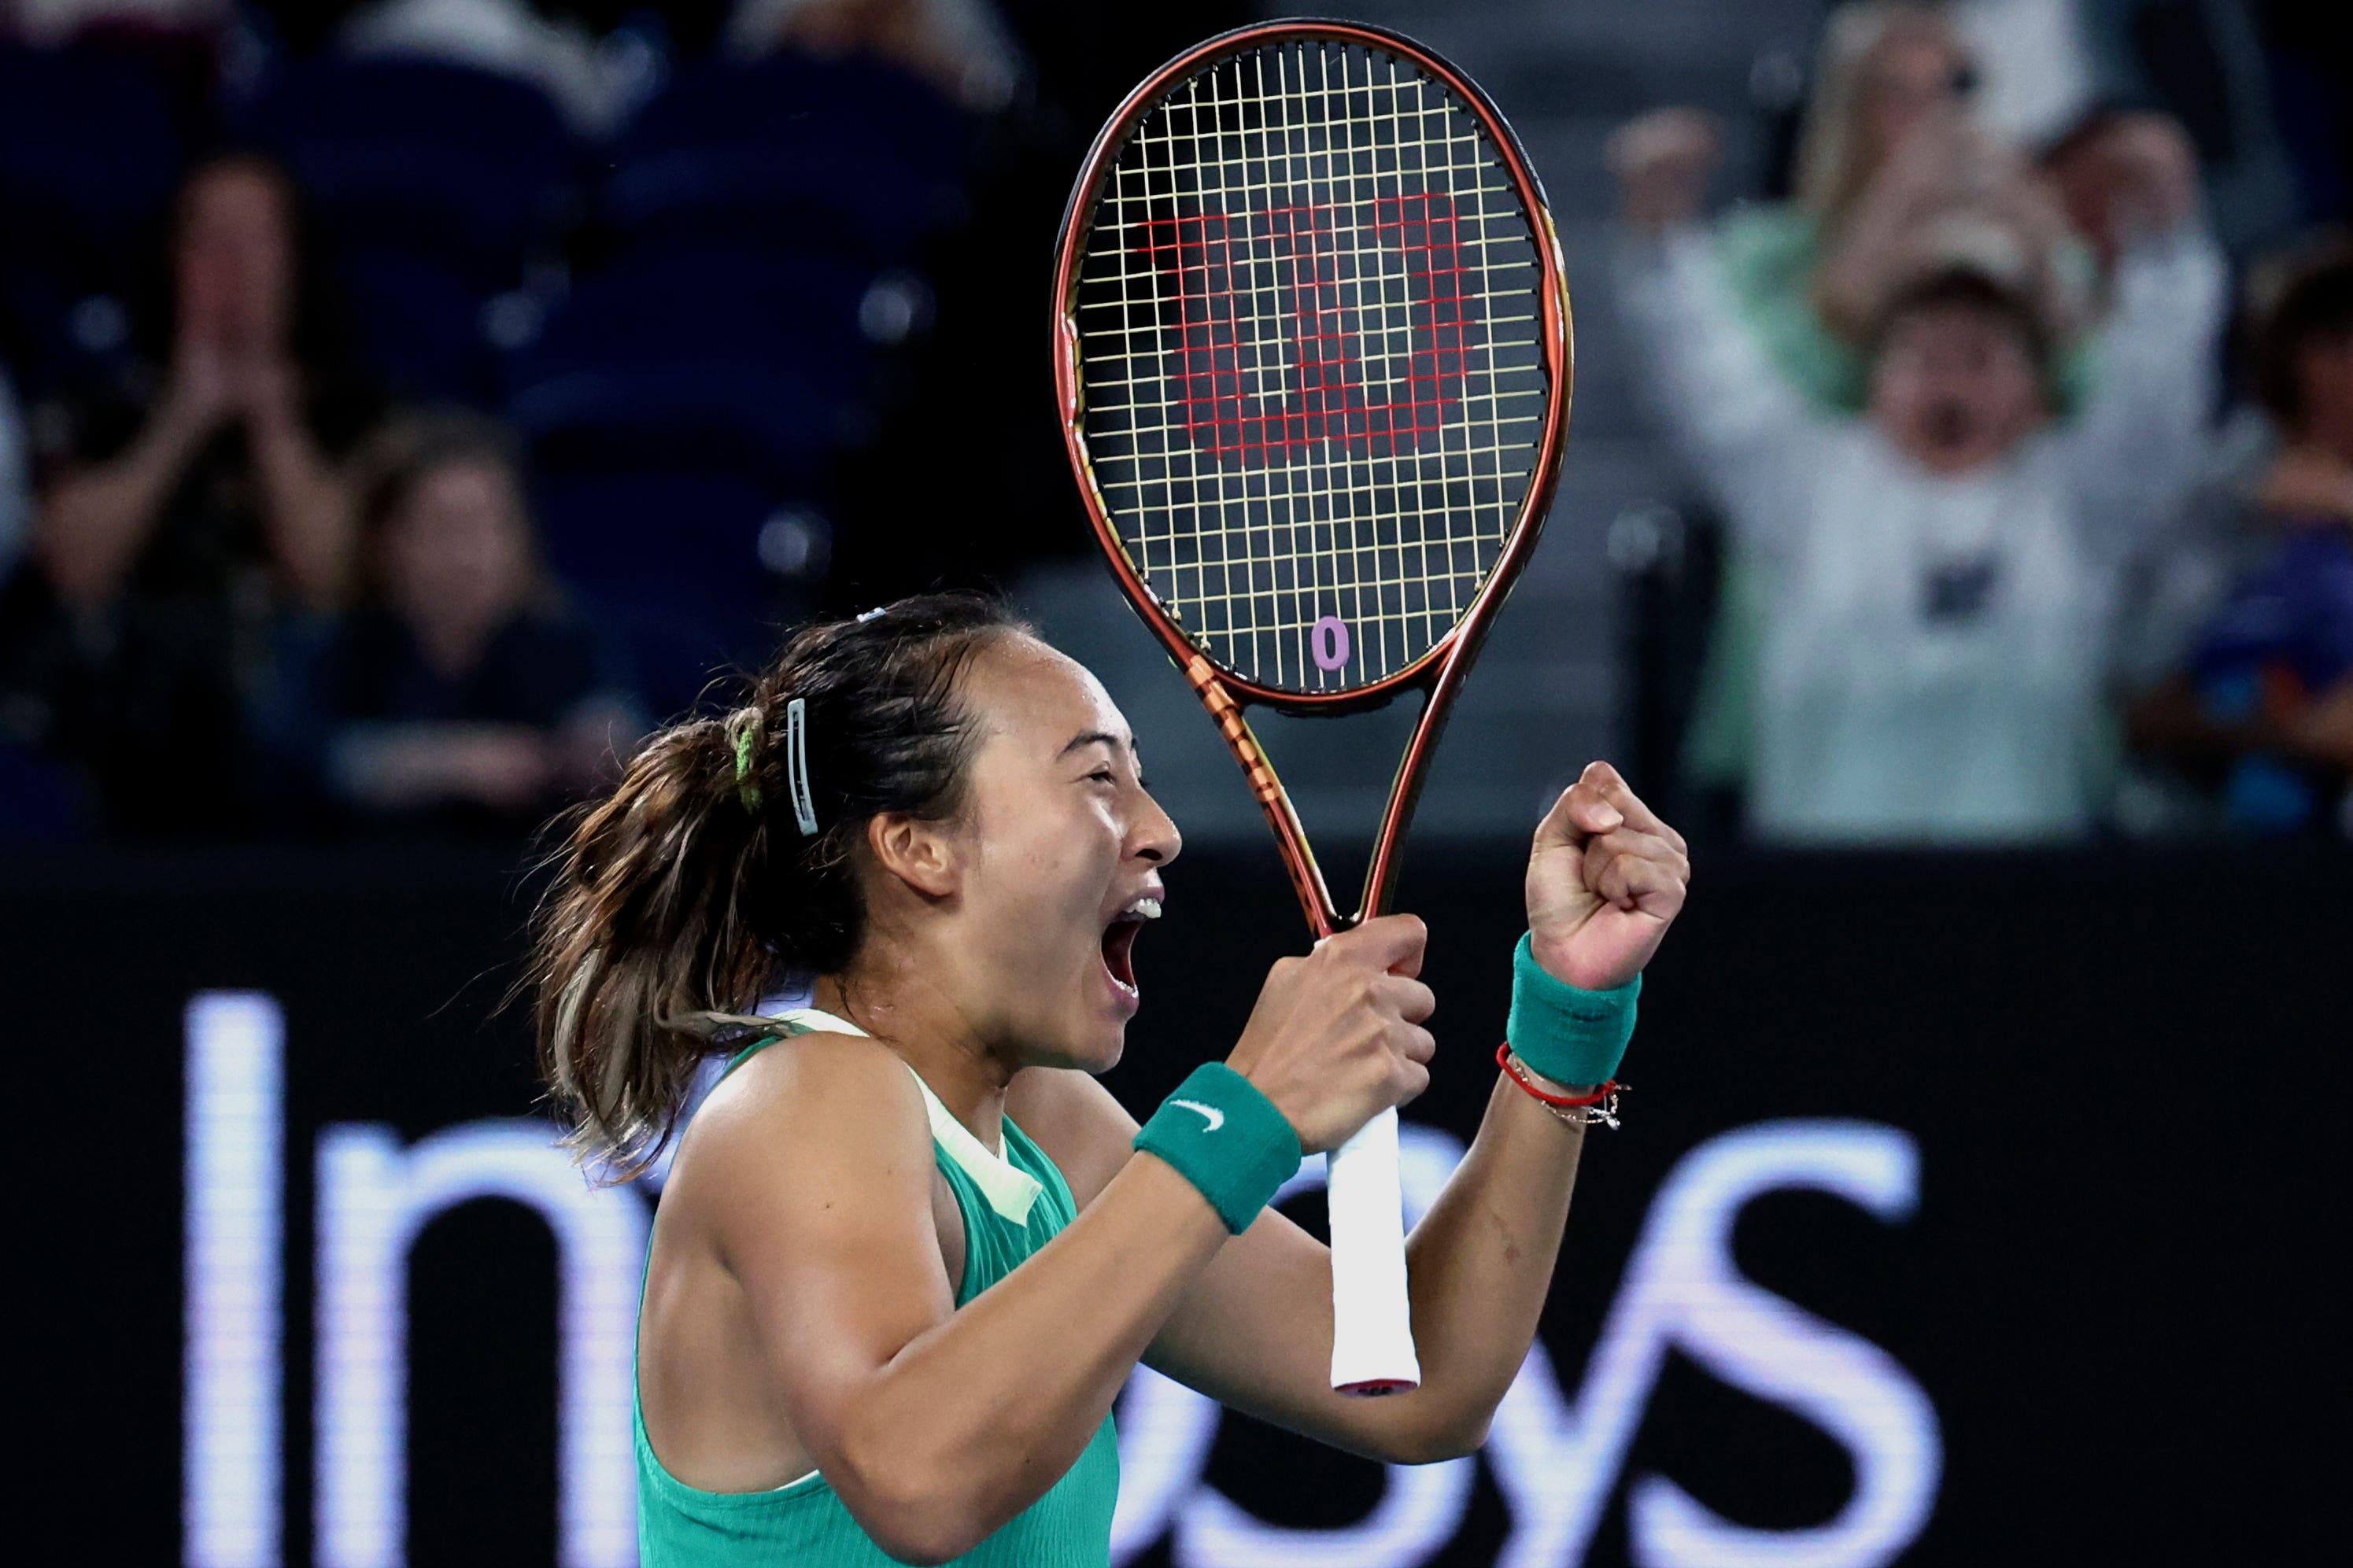 Zheng Qinwen celebrates reaching the Australian Open final (Asanka Brendon Ratnayake/AP)